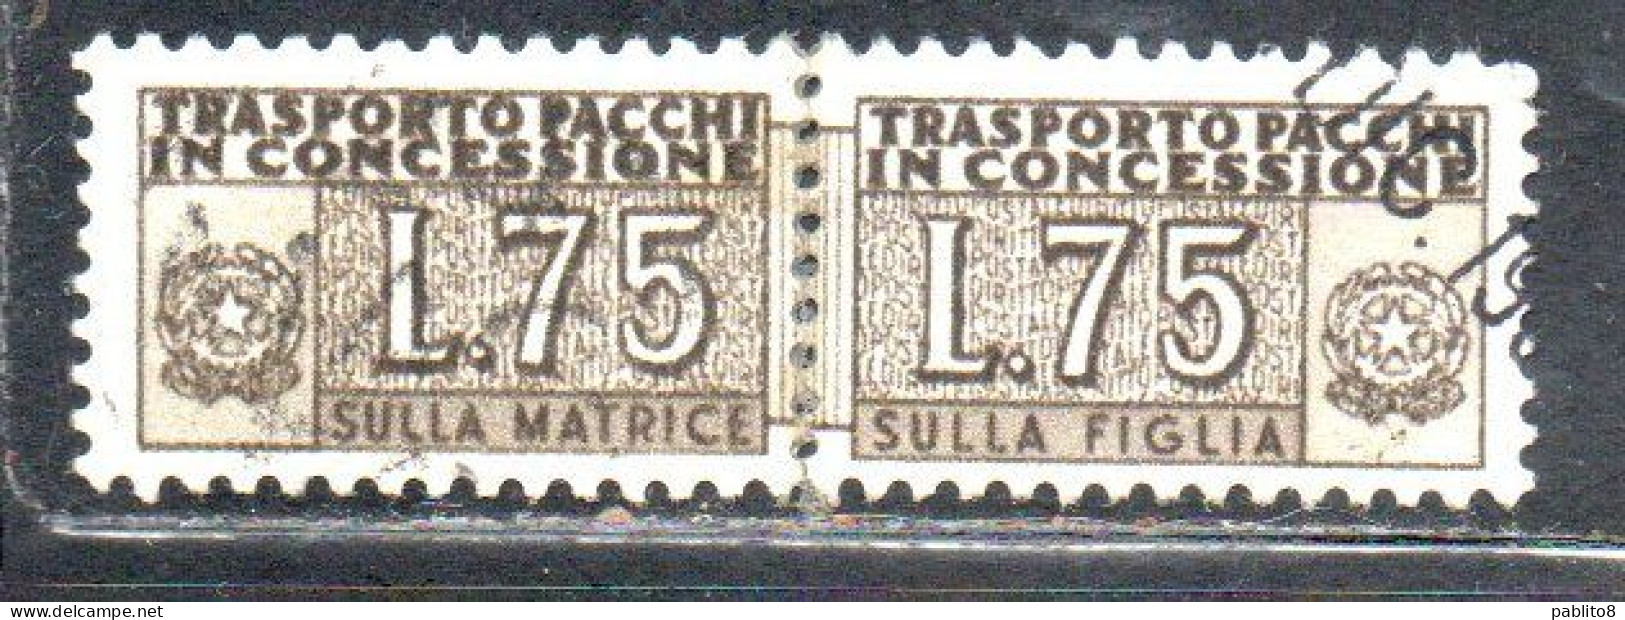 ITALIA REPUBBLICA ITALY REPUBLIC 1955 1981 PACCHI IN CONCESSIONE PARCEL POST STELLE STARS LIRE 75 USATO USED OBLIT - Concessiepaketten